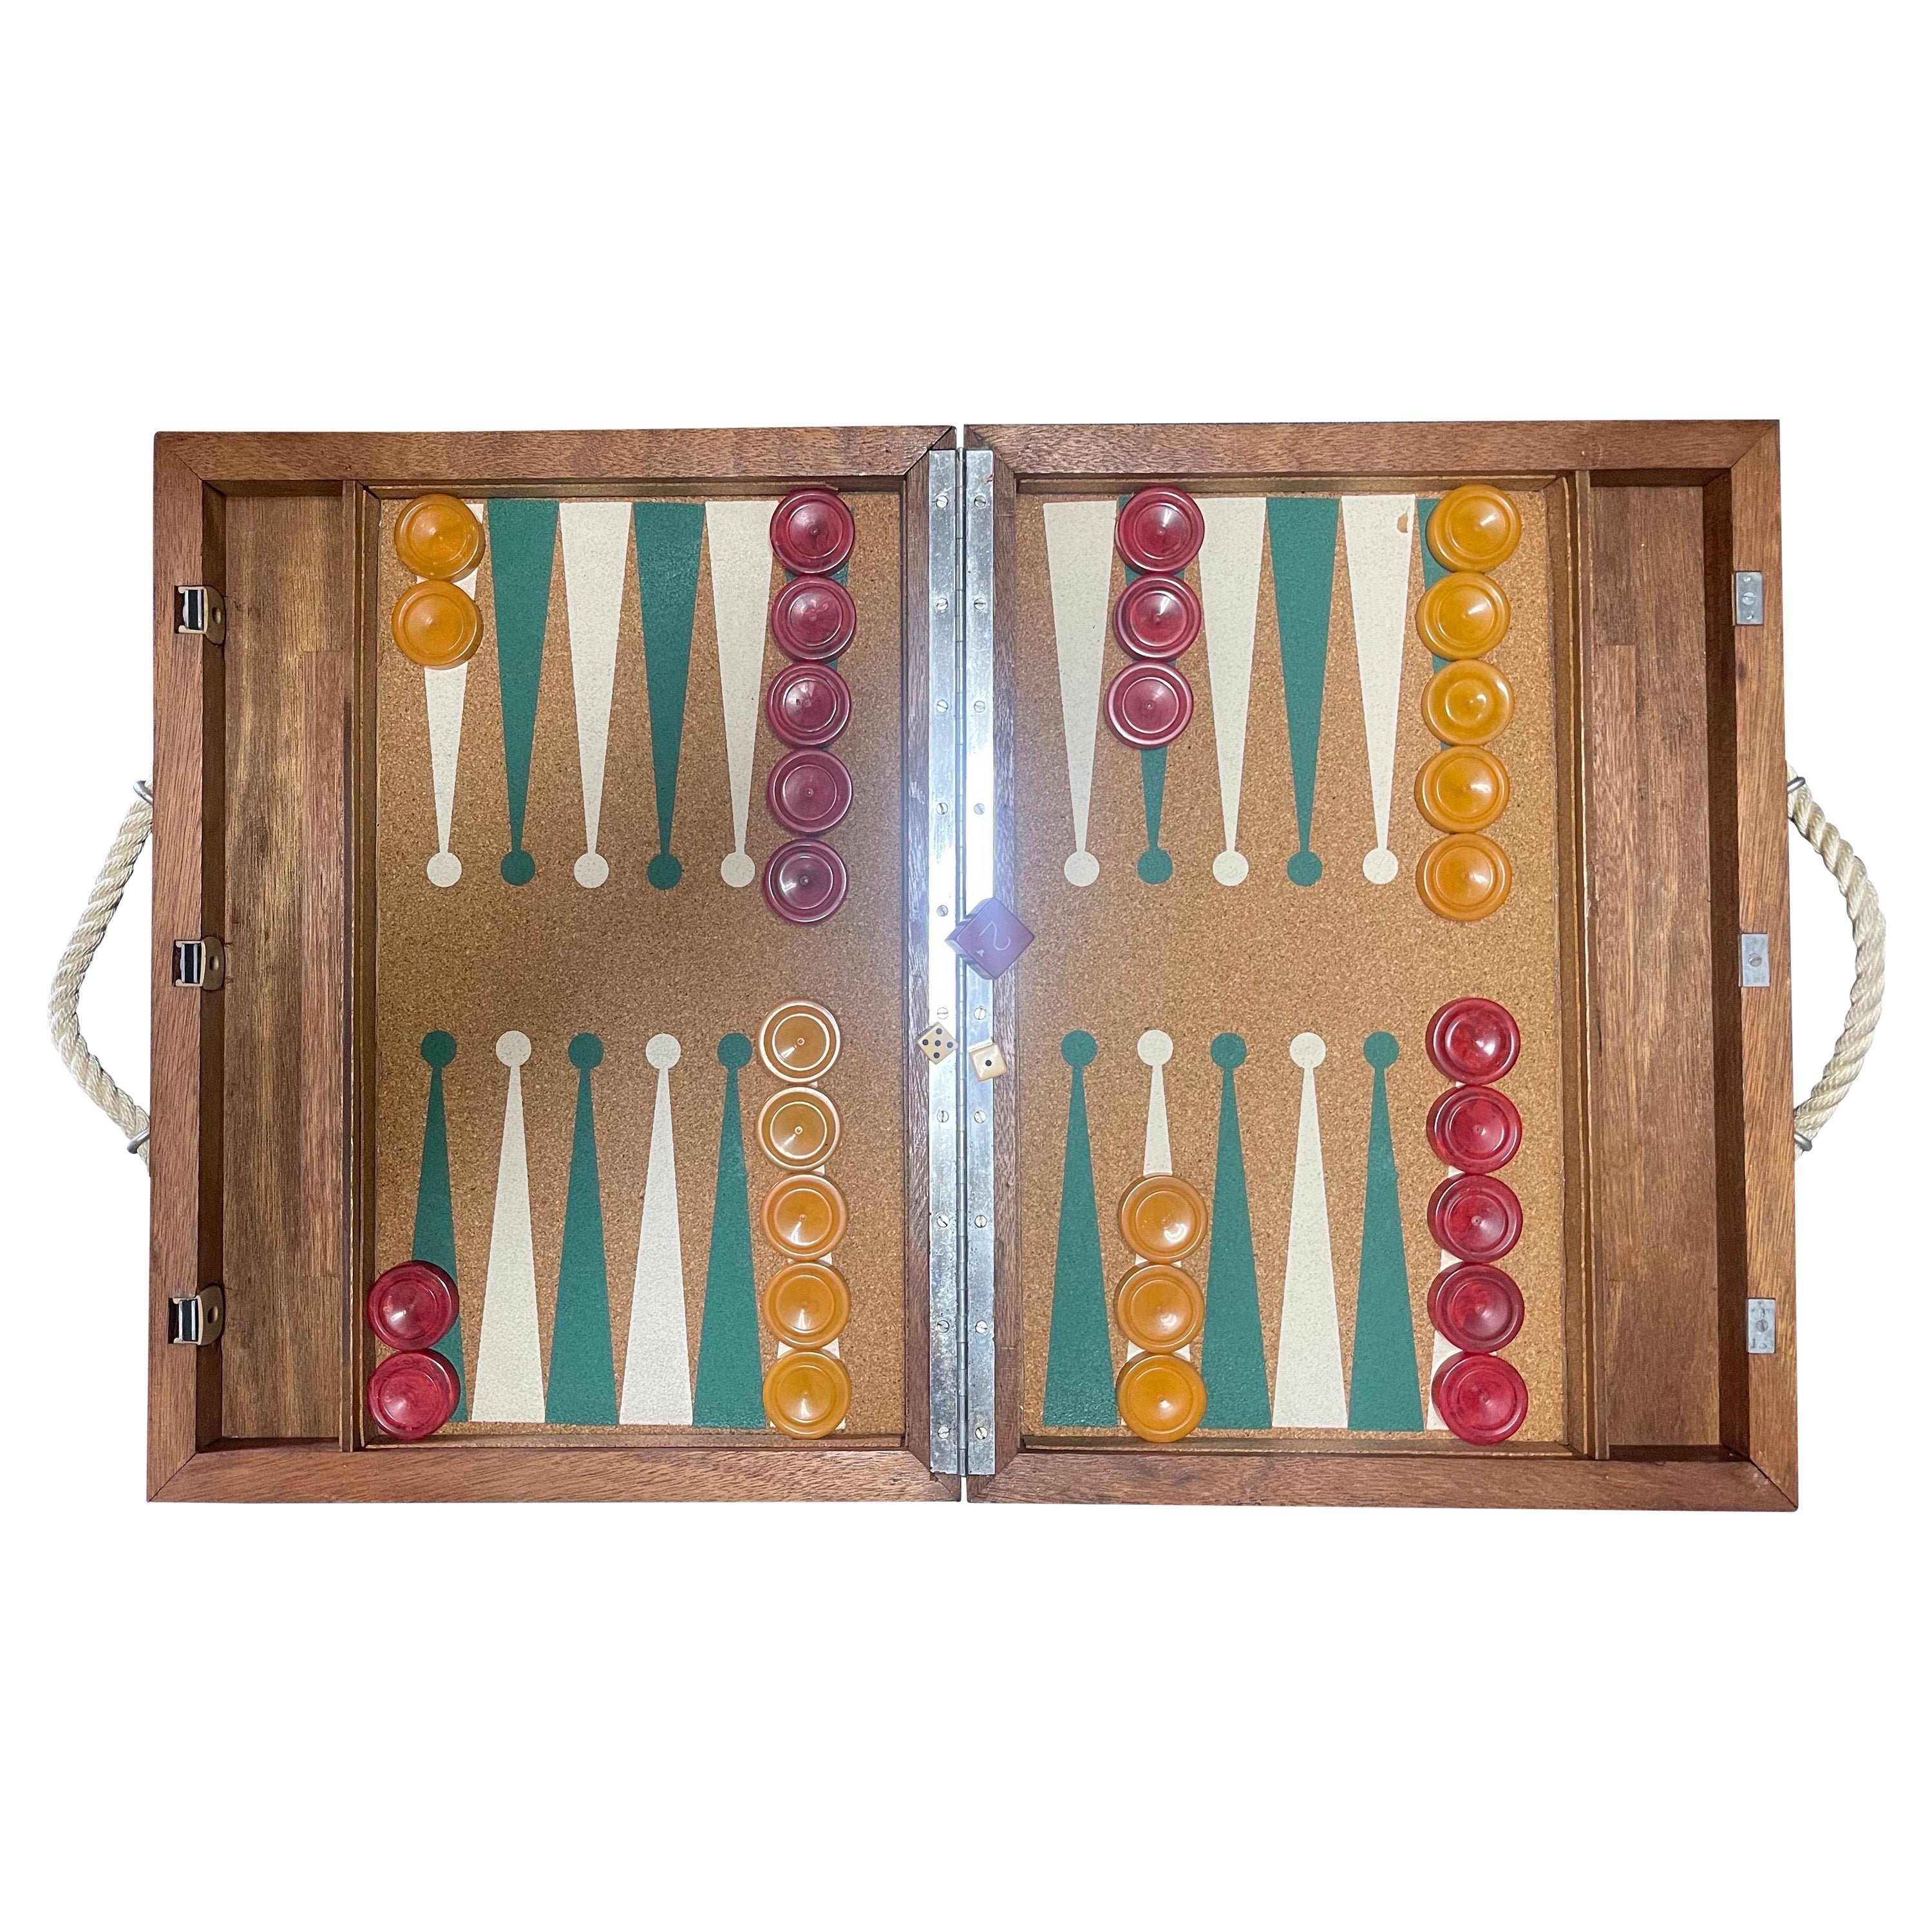 Backgammon-Set aus Kork und Bakelit im Art déco-Stil, Vintage